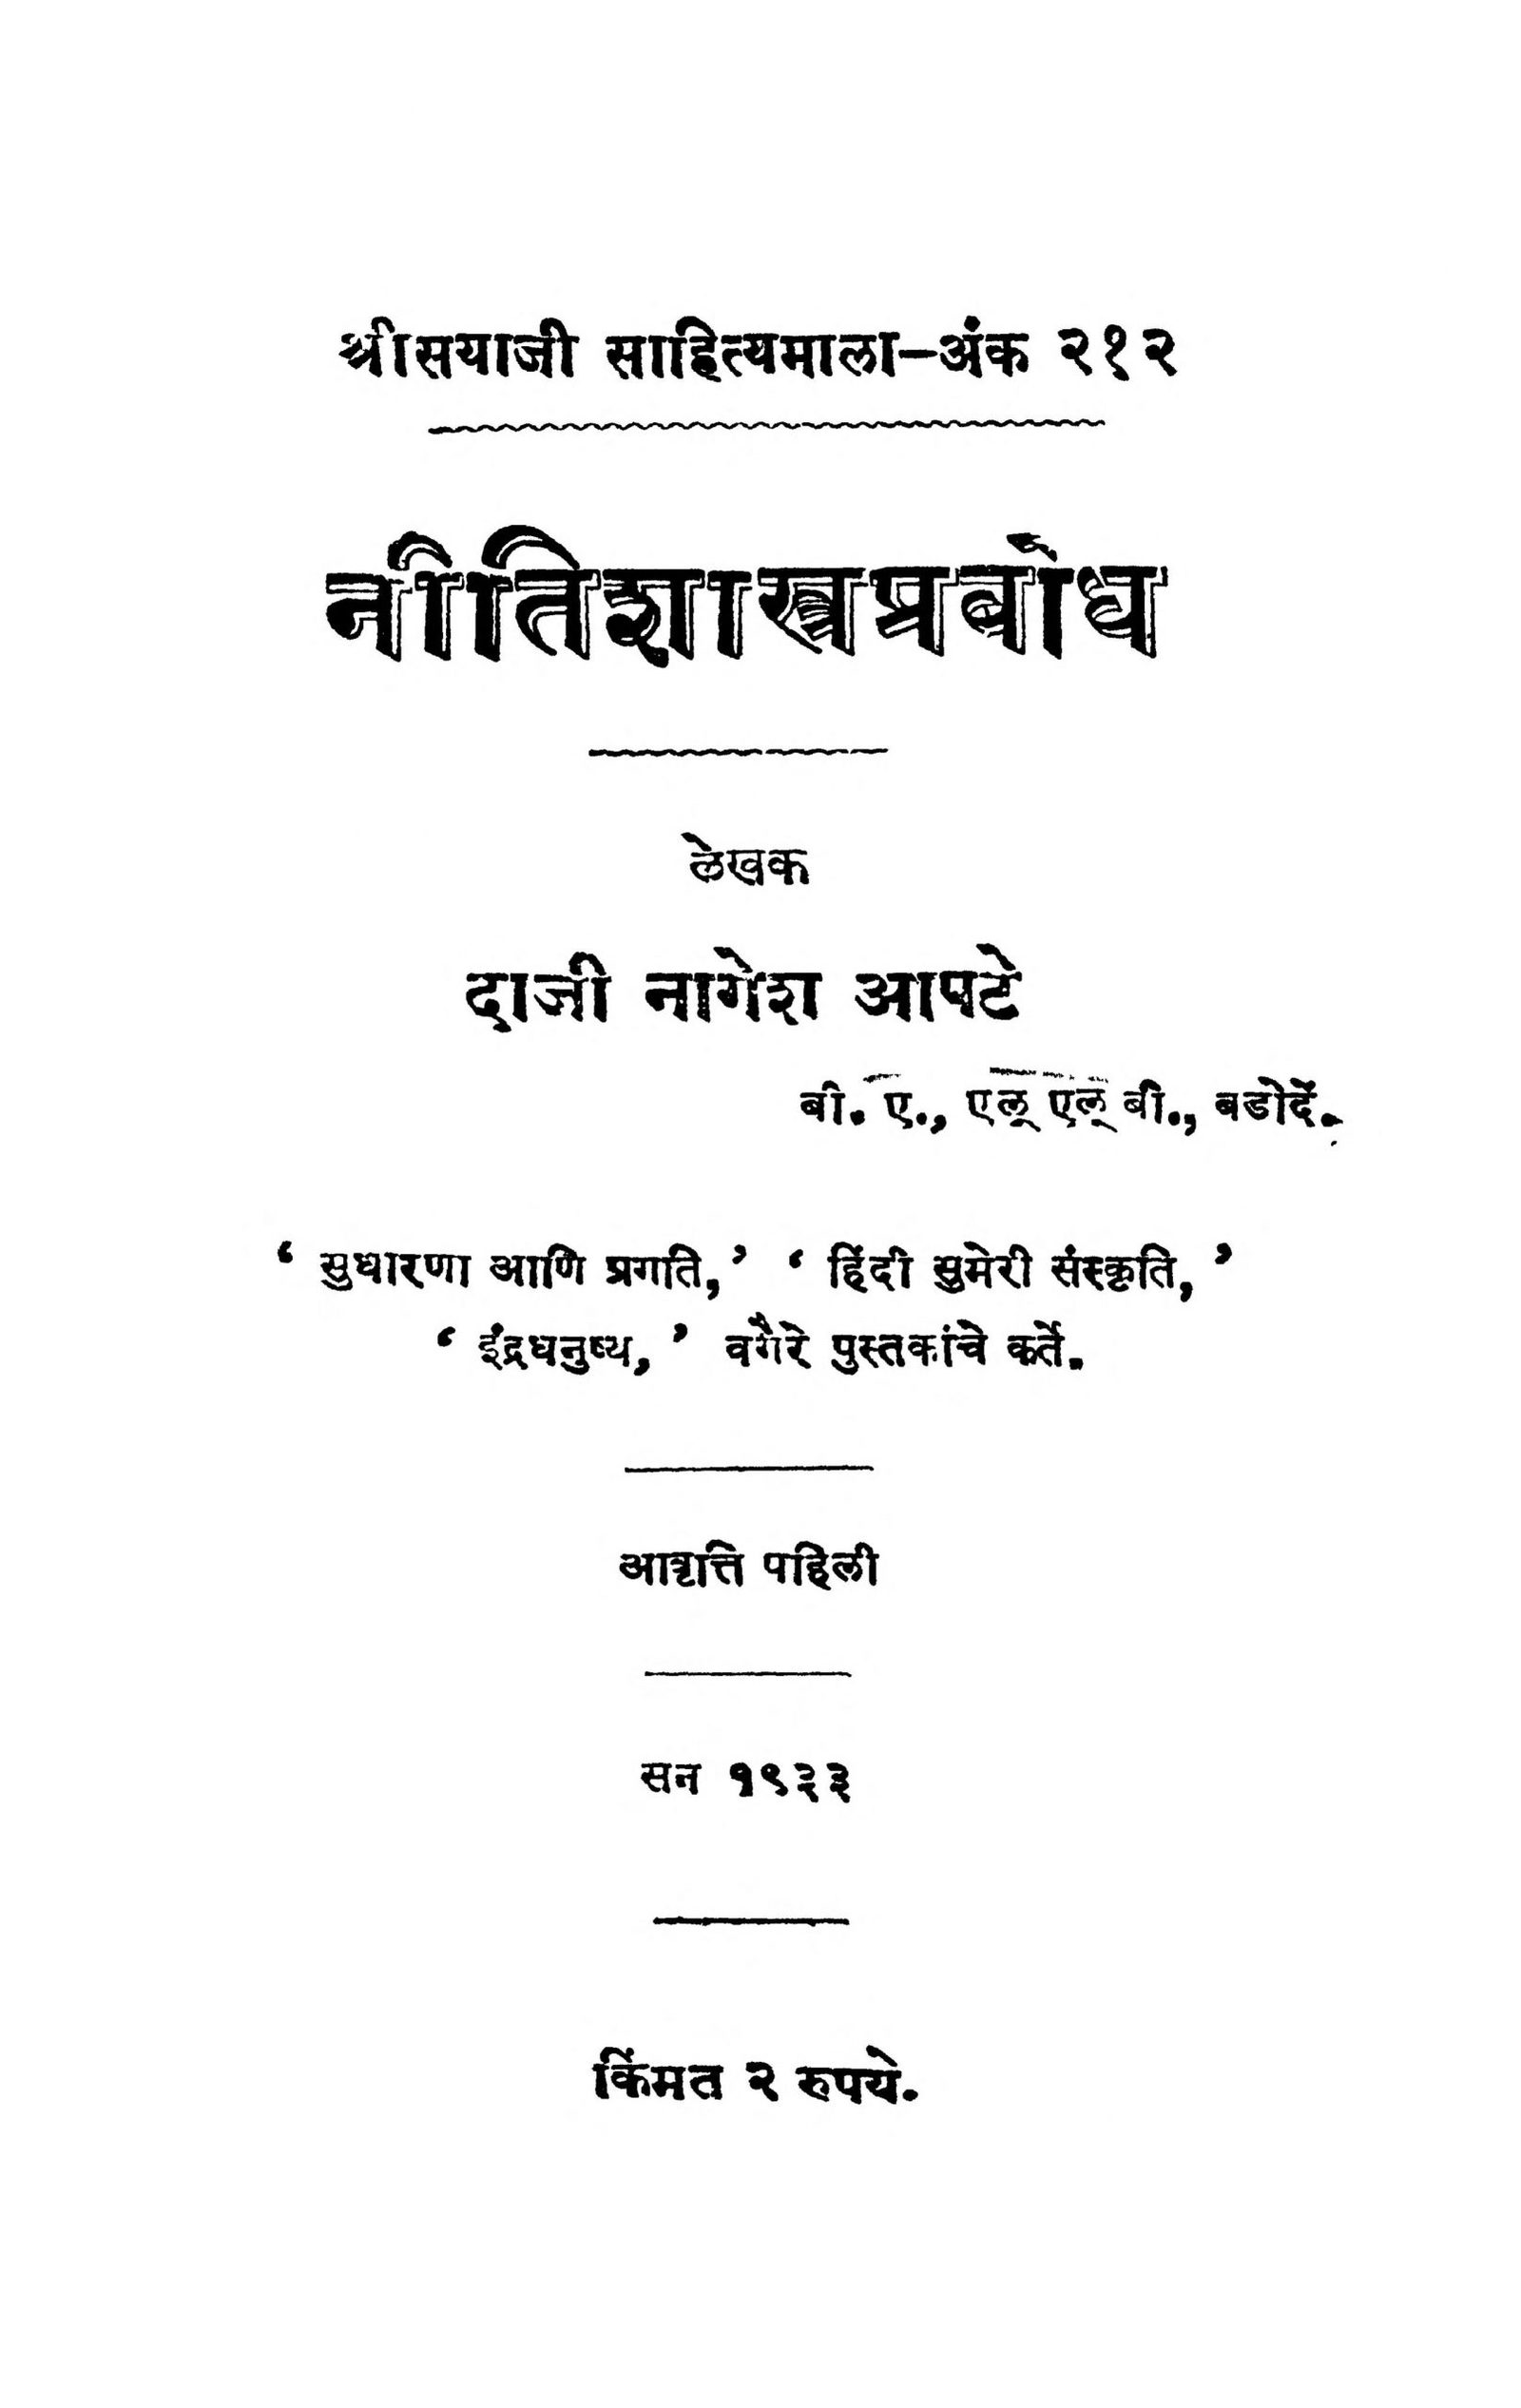 niti-shaastr-prabodh-by-daji-nagesh-aapate-scaled-2